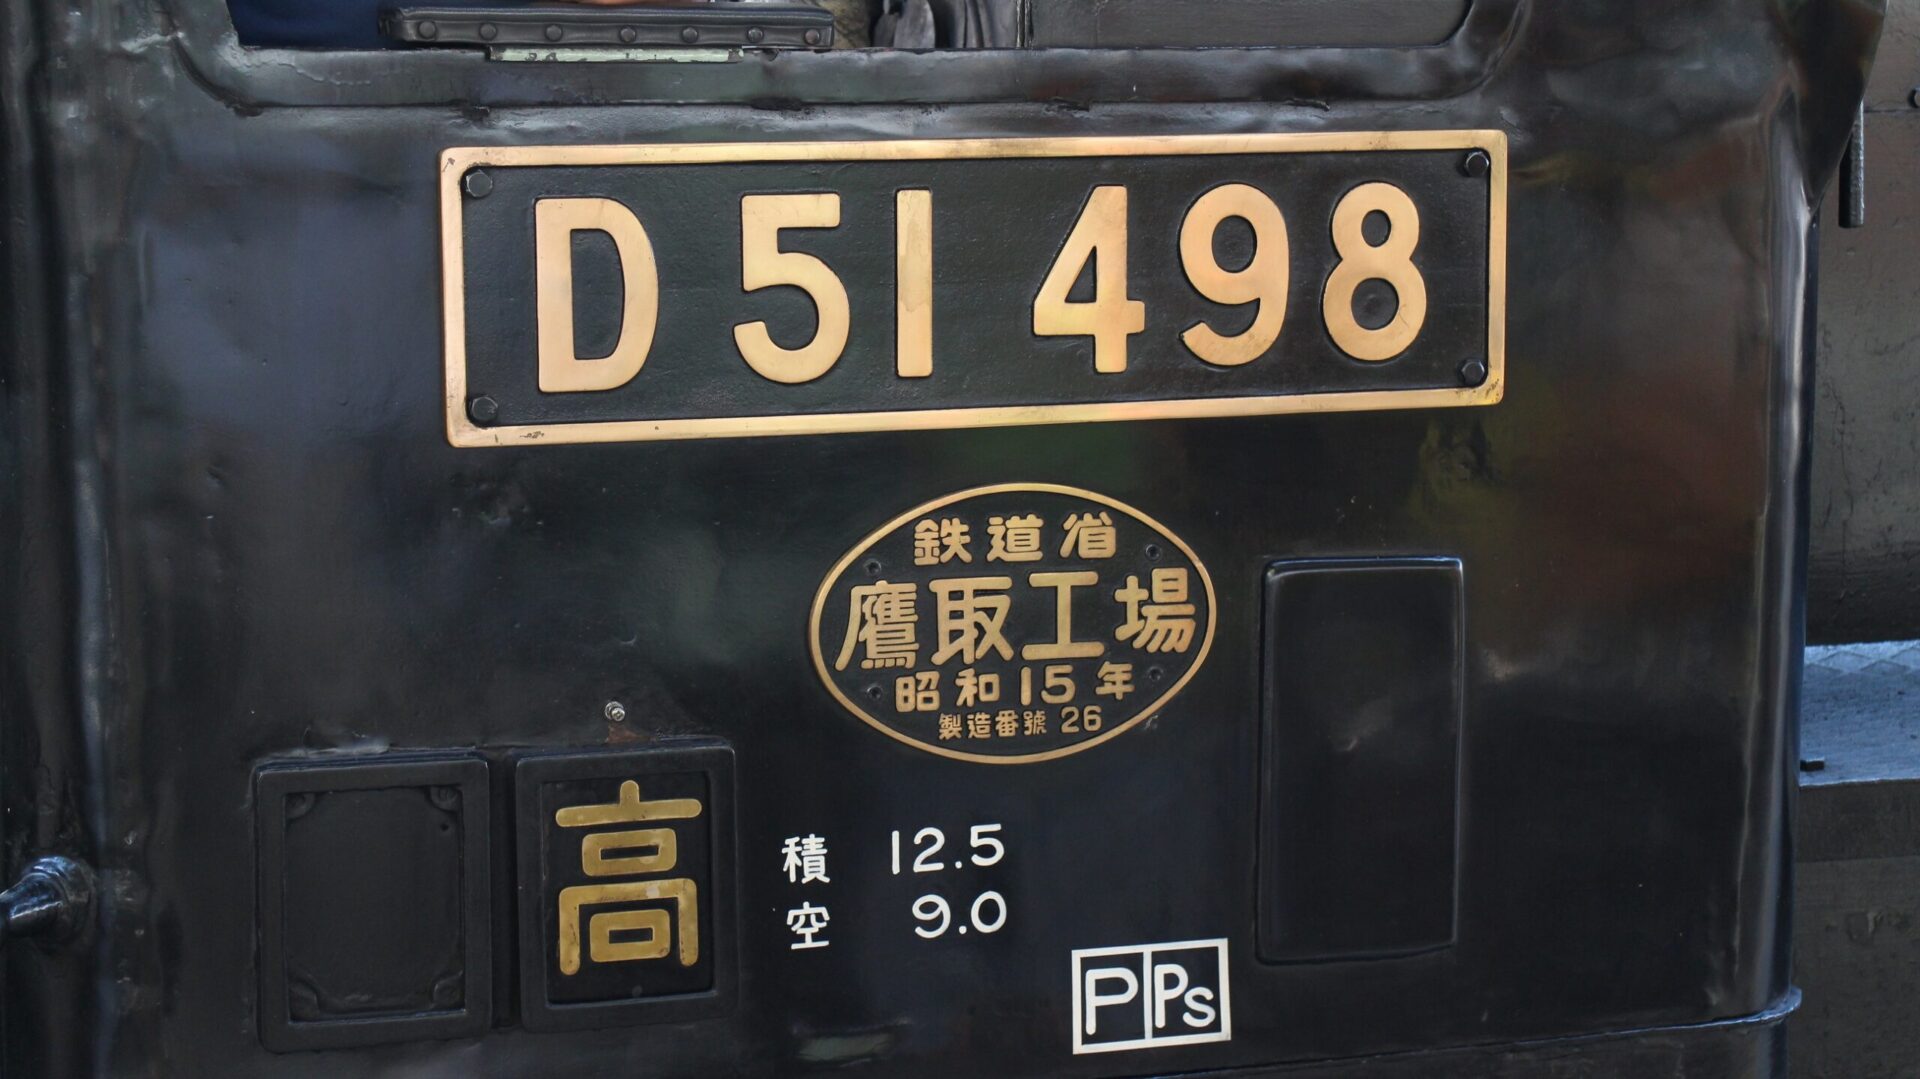 D51 498銘板